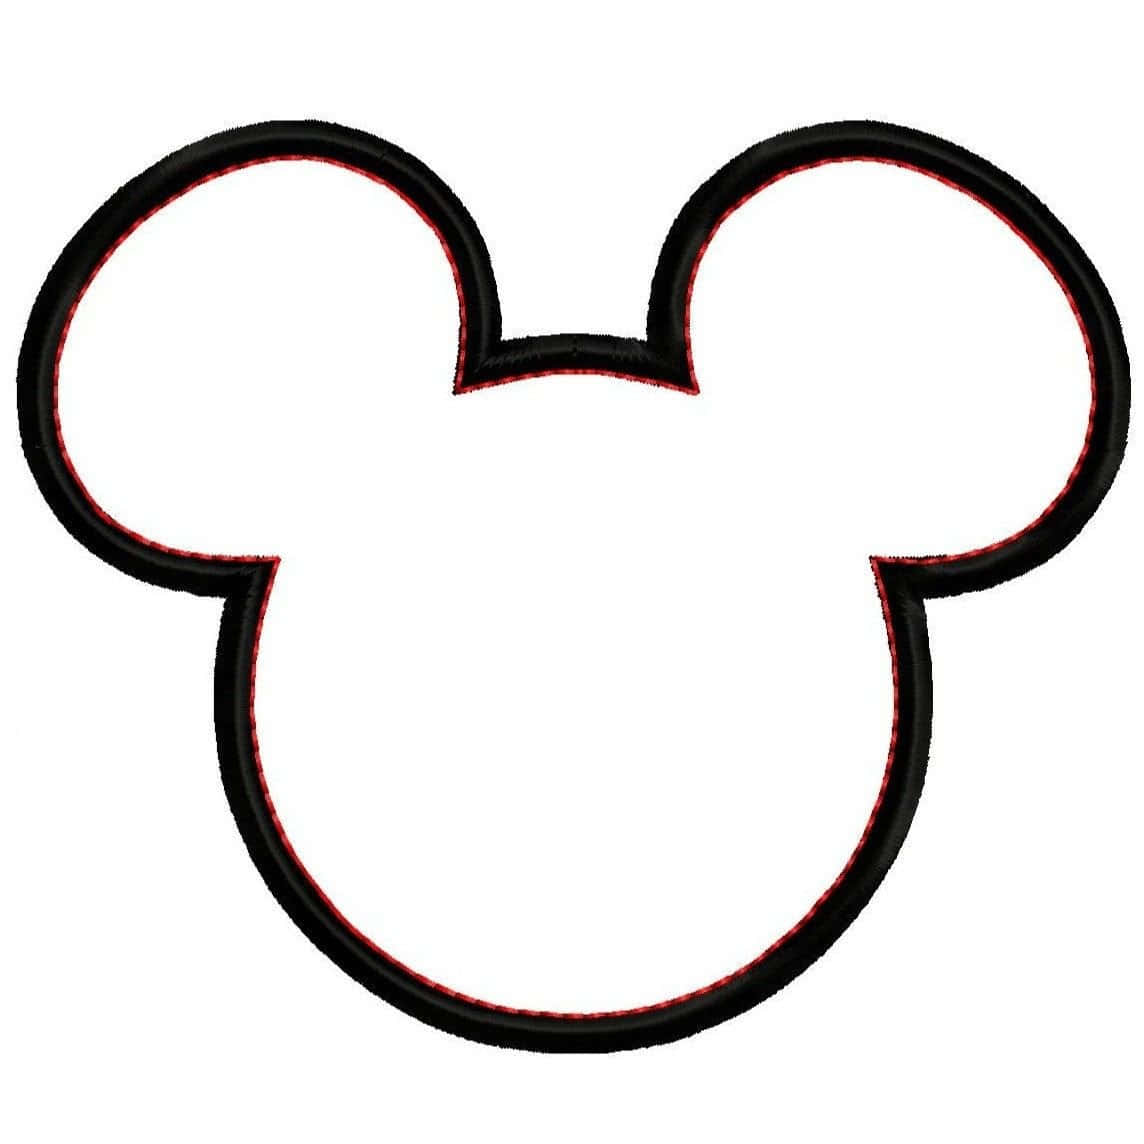 Zeigensie Ihren Disney-geist Mit Mickey-maus-ohren! Wallpaper